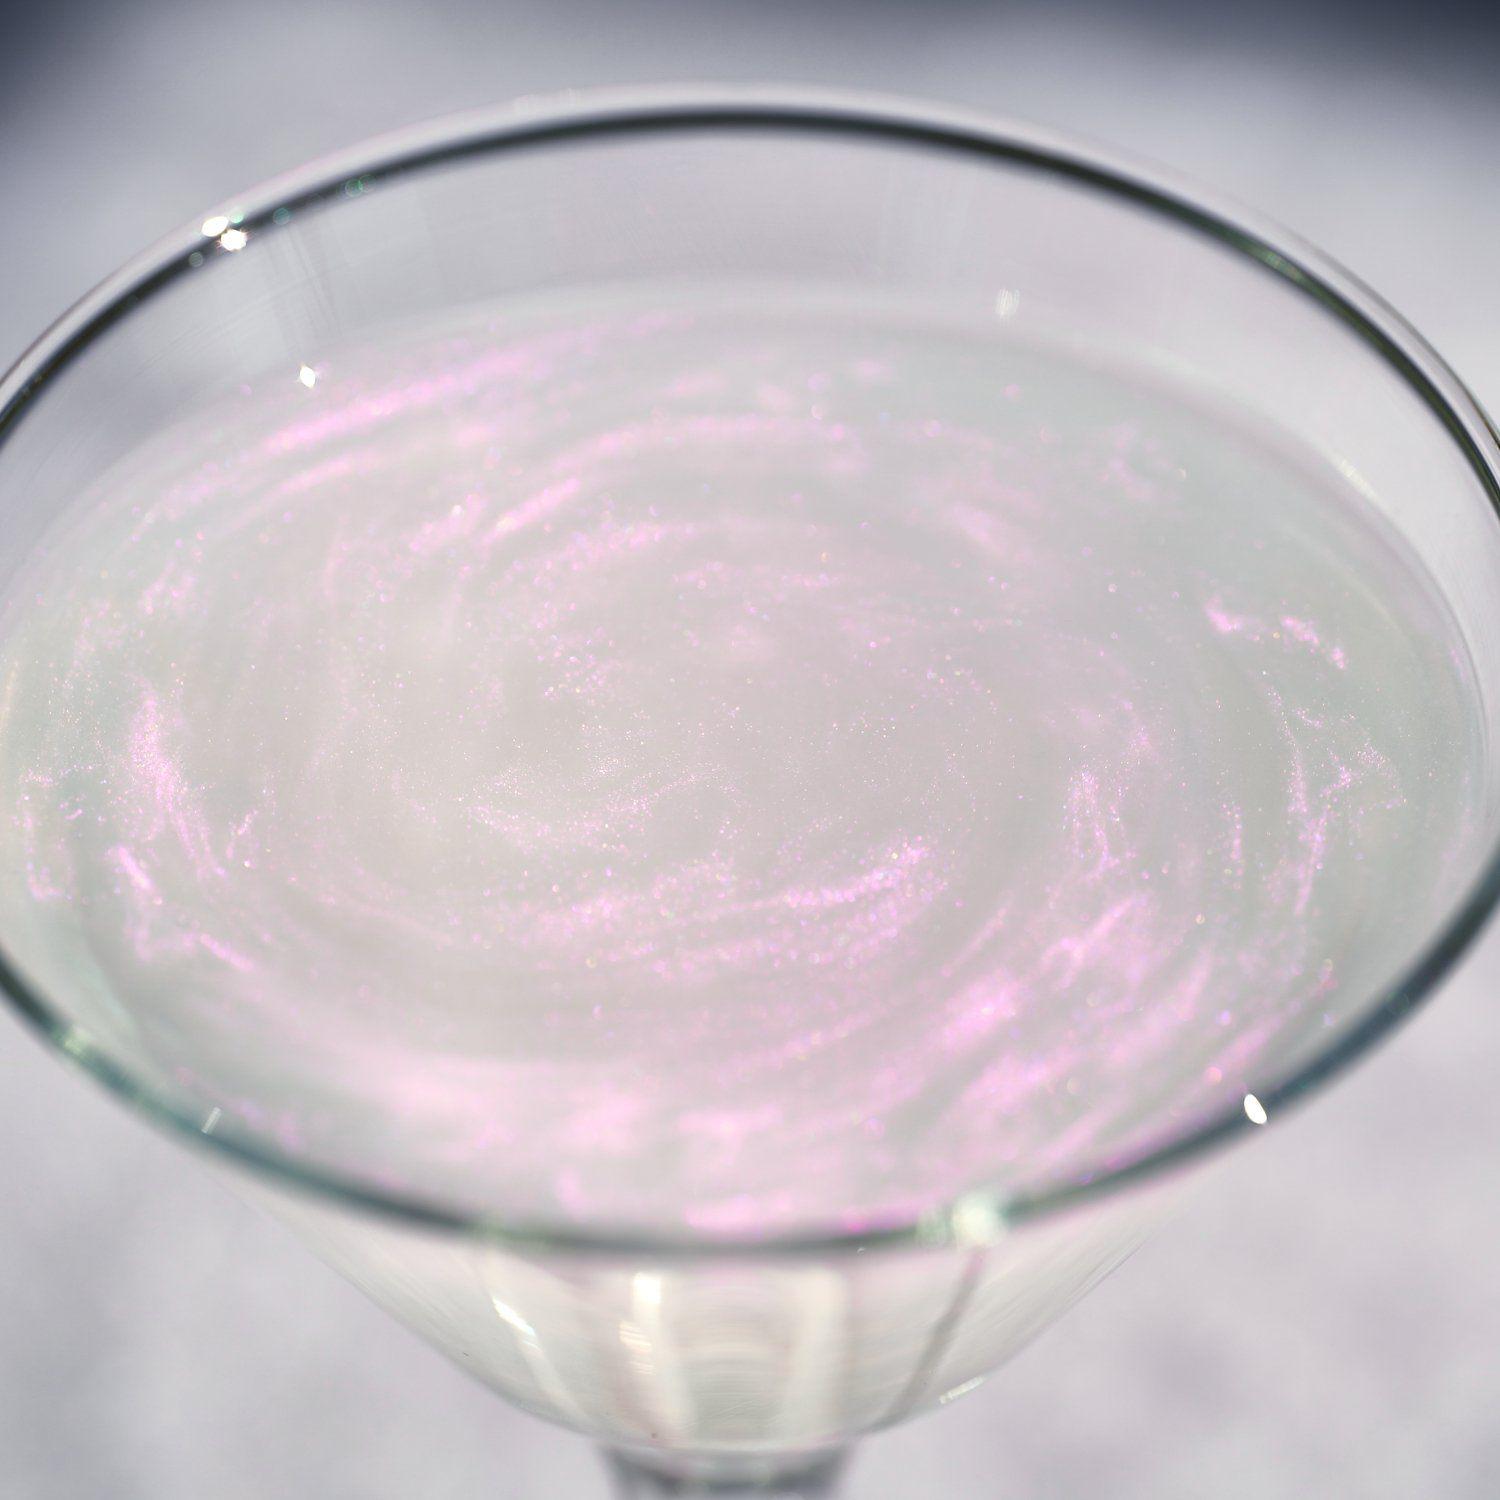 Pink Iridescent Brew Glitter | Cocktail Beverage Glitter-Brew Glitter®